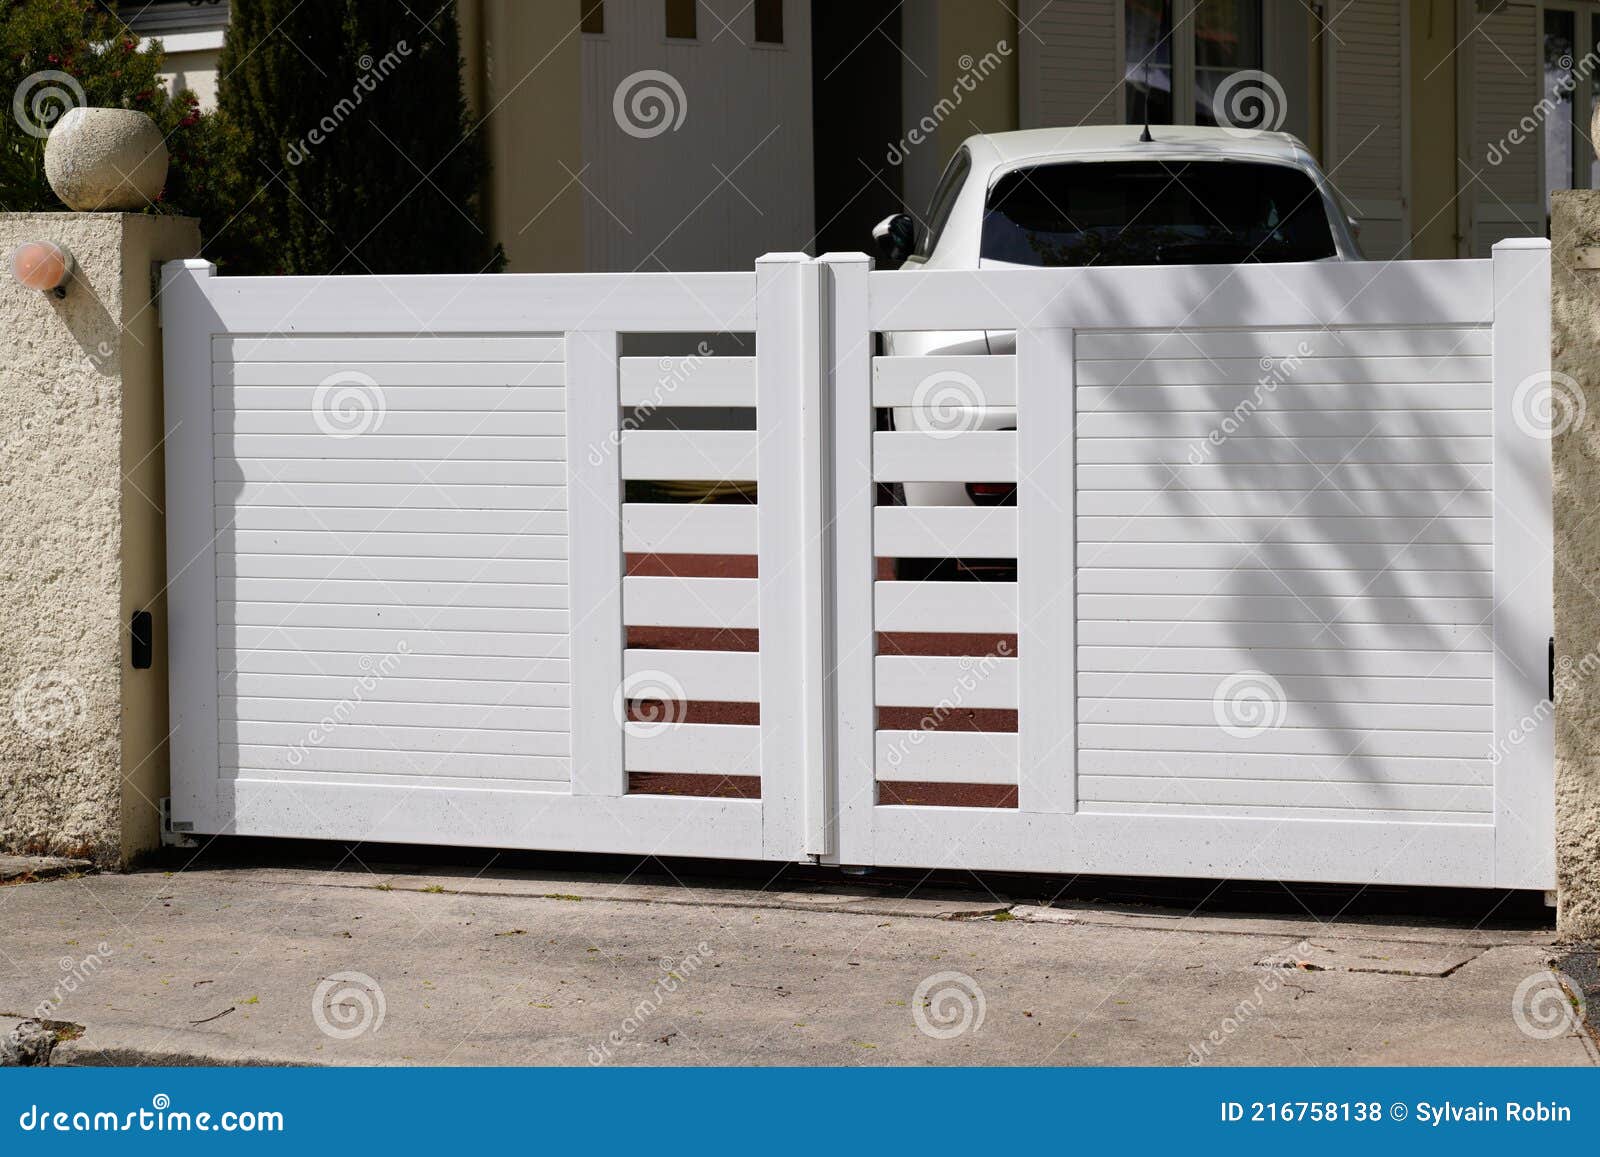 Portal Steel Aluminum White Metal Gate Modern Door Home of Garden ...